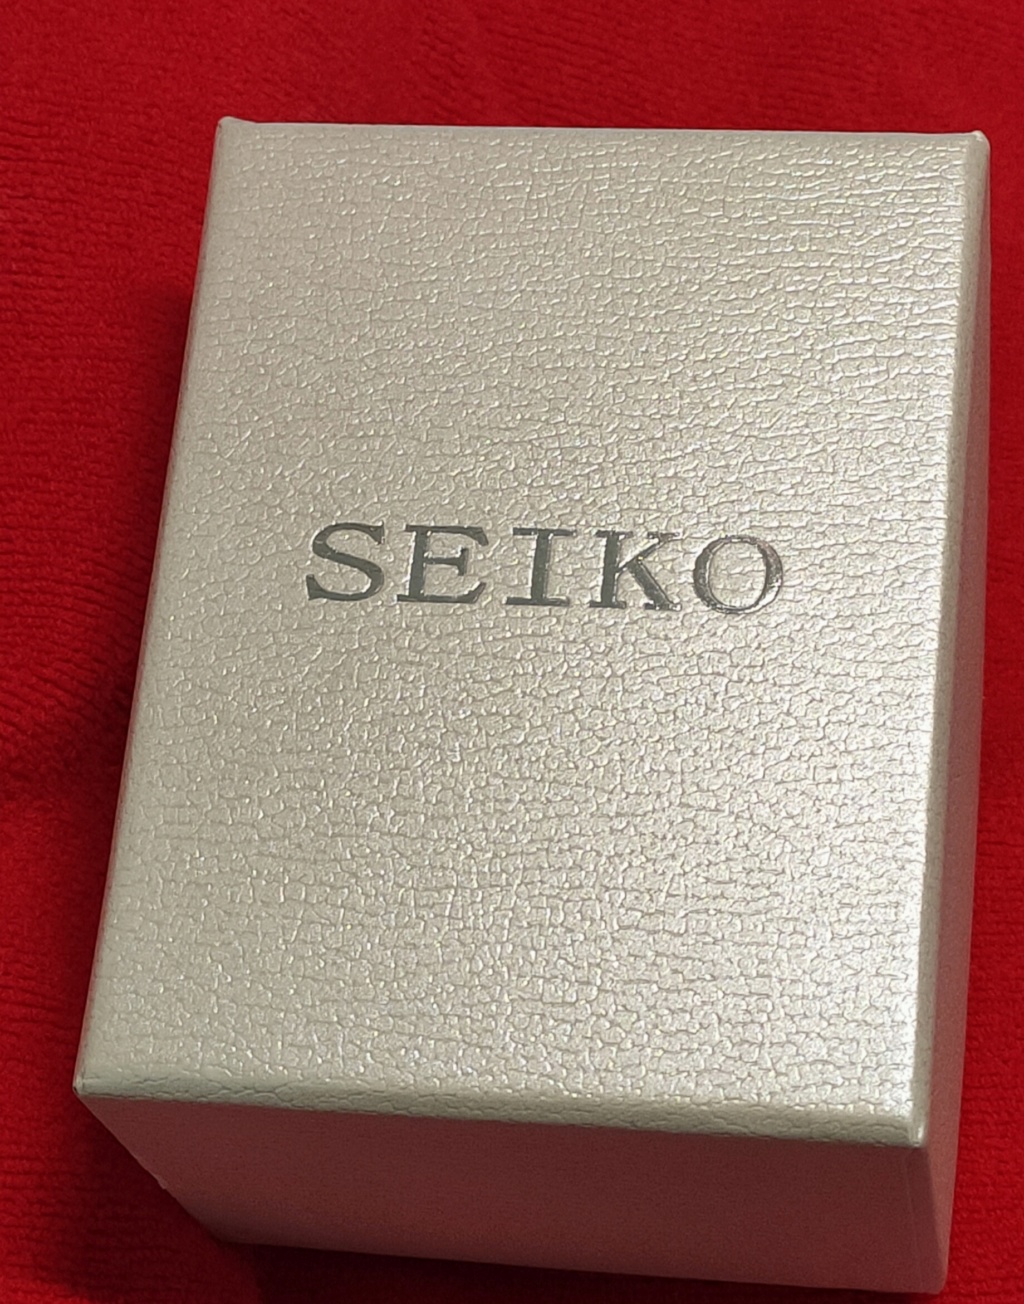 a surprising Seiko Img_2096